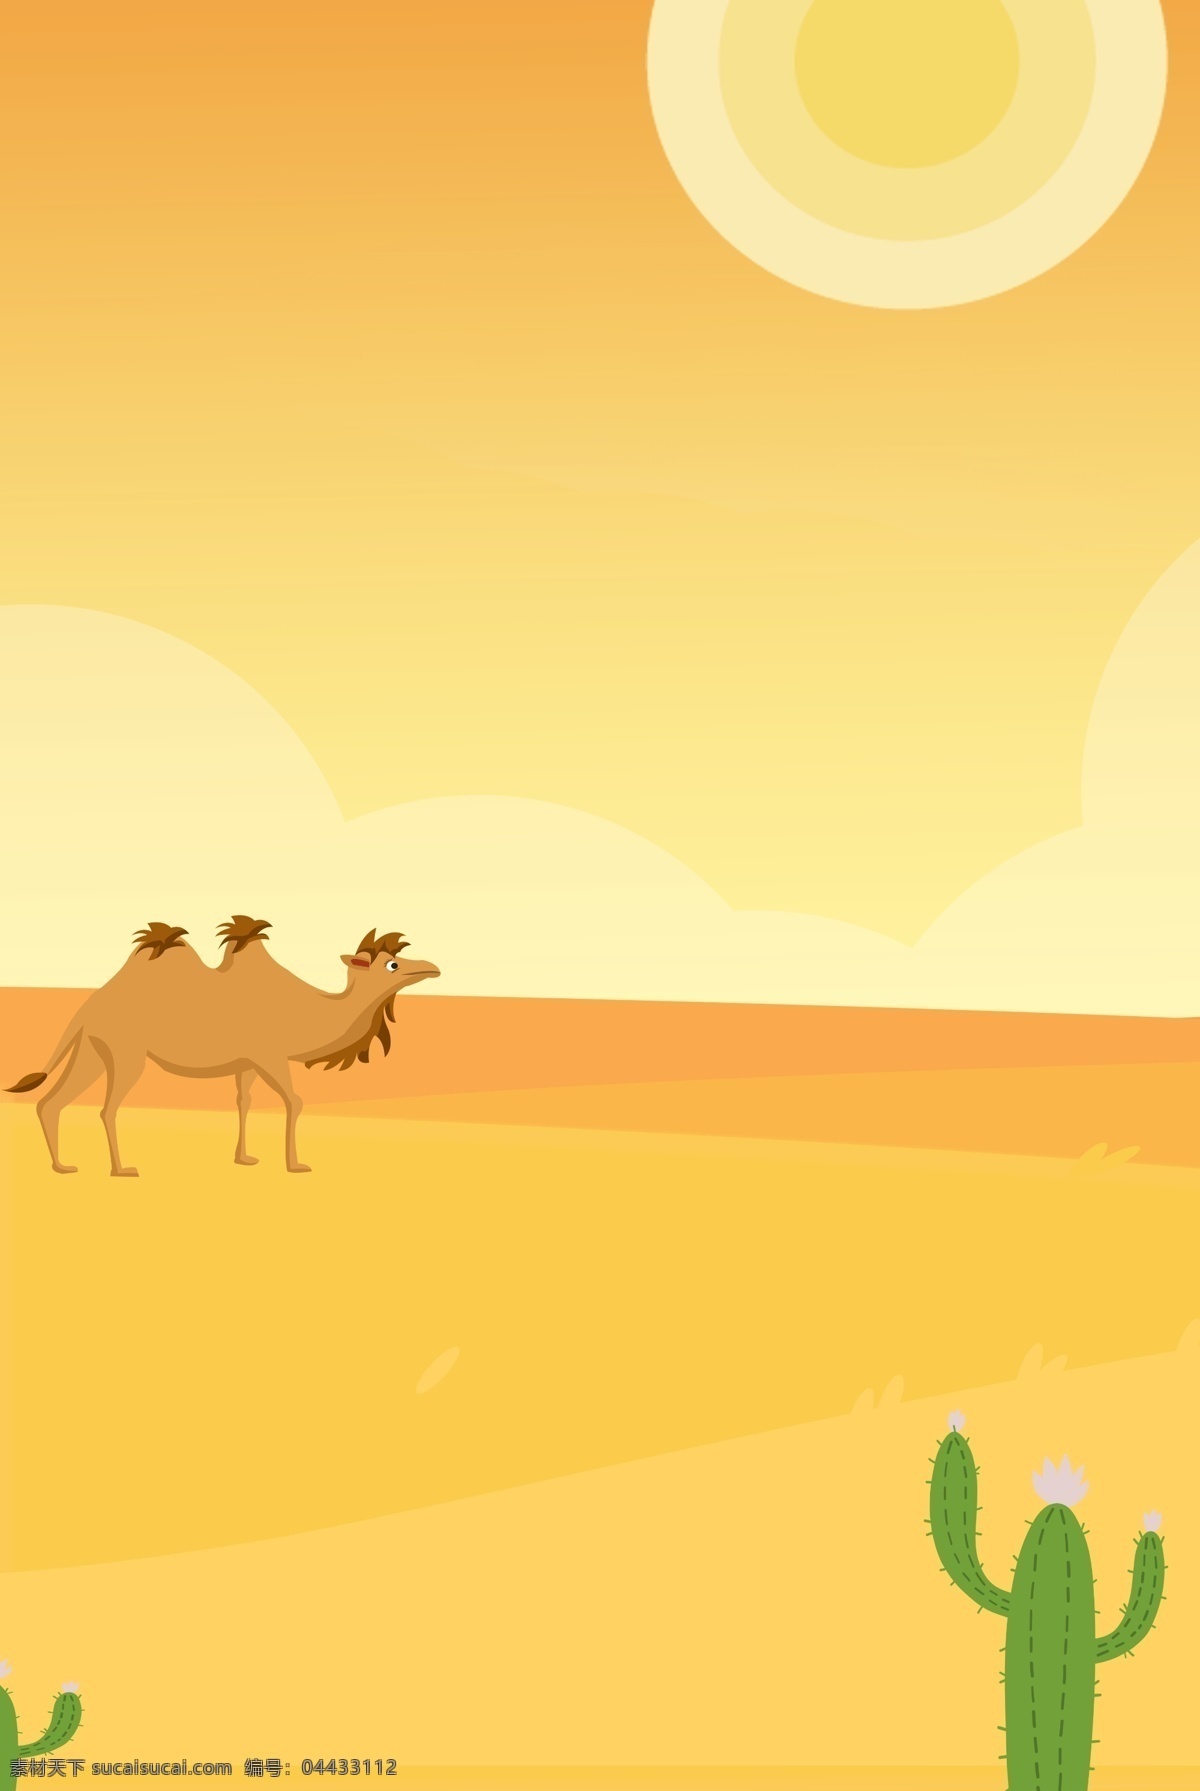 沙漠 场景 黄色 卡通 旅游 简约 背景 骆驼 沙漠背景